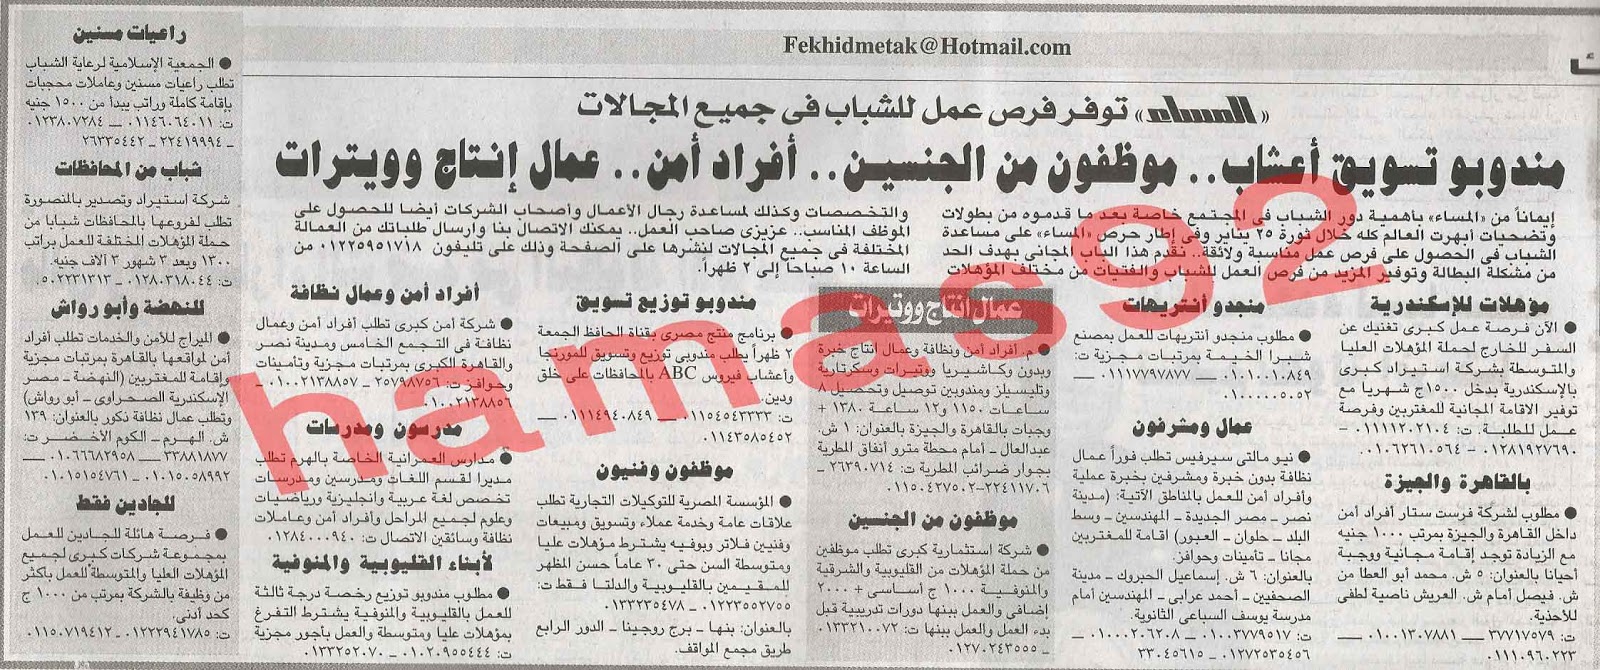 وظائف خالية من جريدة المساء المصرية اليوم السبت 9/2/2013 %D8%A7%D9%84%D9%85%D8%B3%D8%A7%D8%A1+1